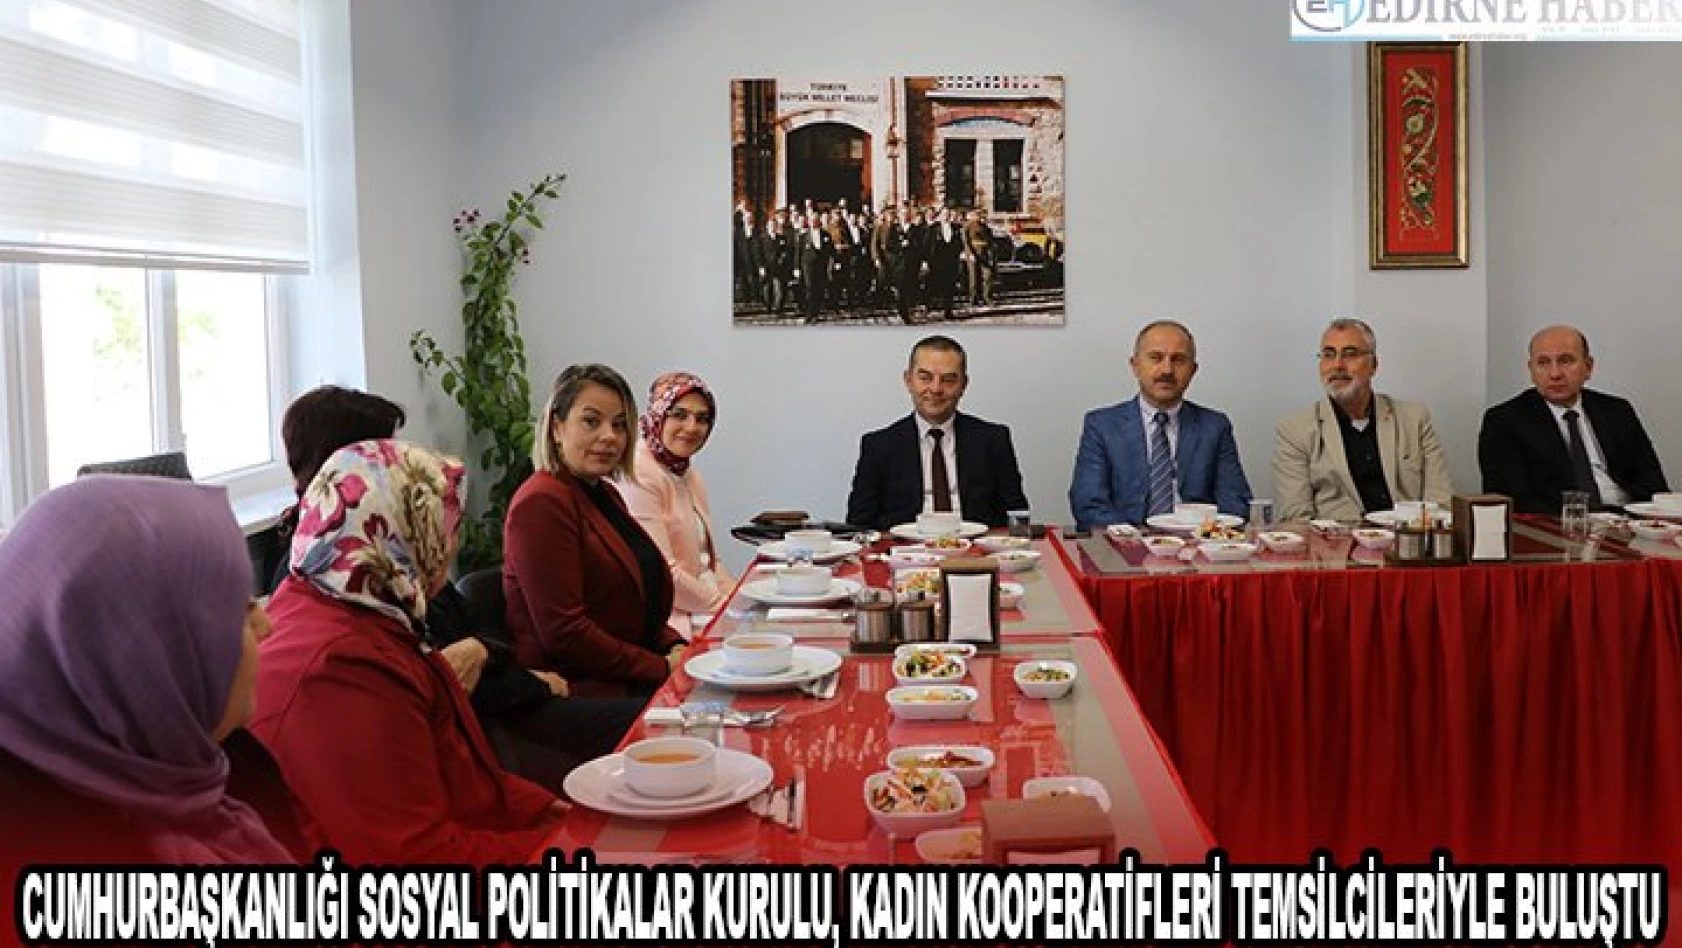 Cumhurbaşkanlığı Sosyal Politikalar Kurulu, kadın kooperatifleri temsilcileriyle buluştu